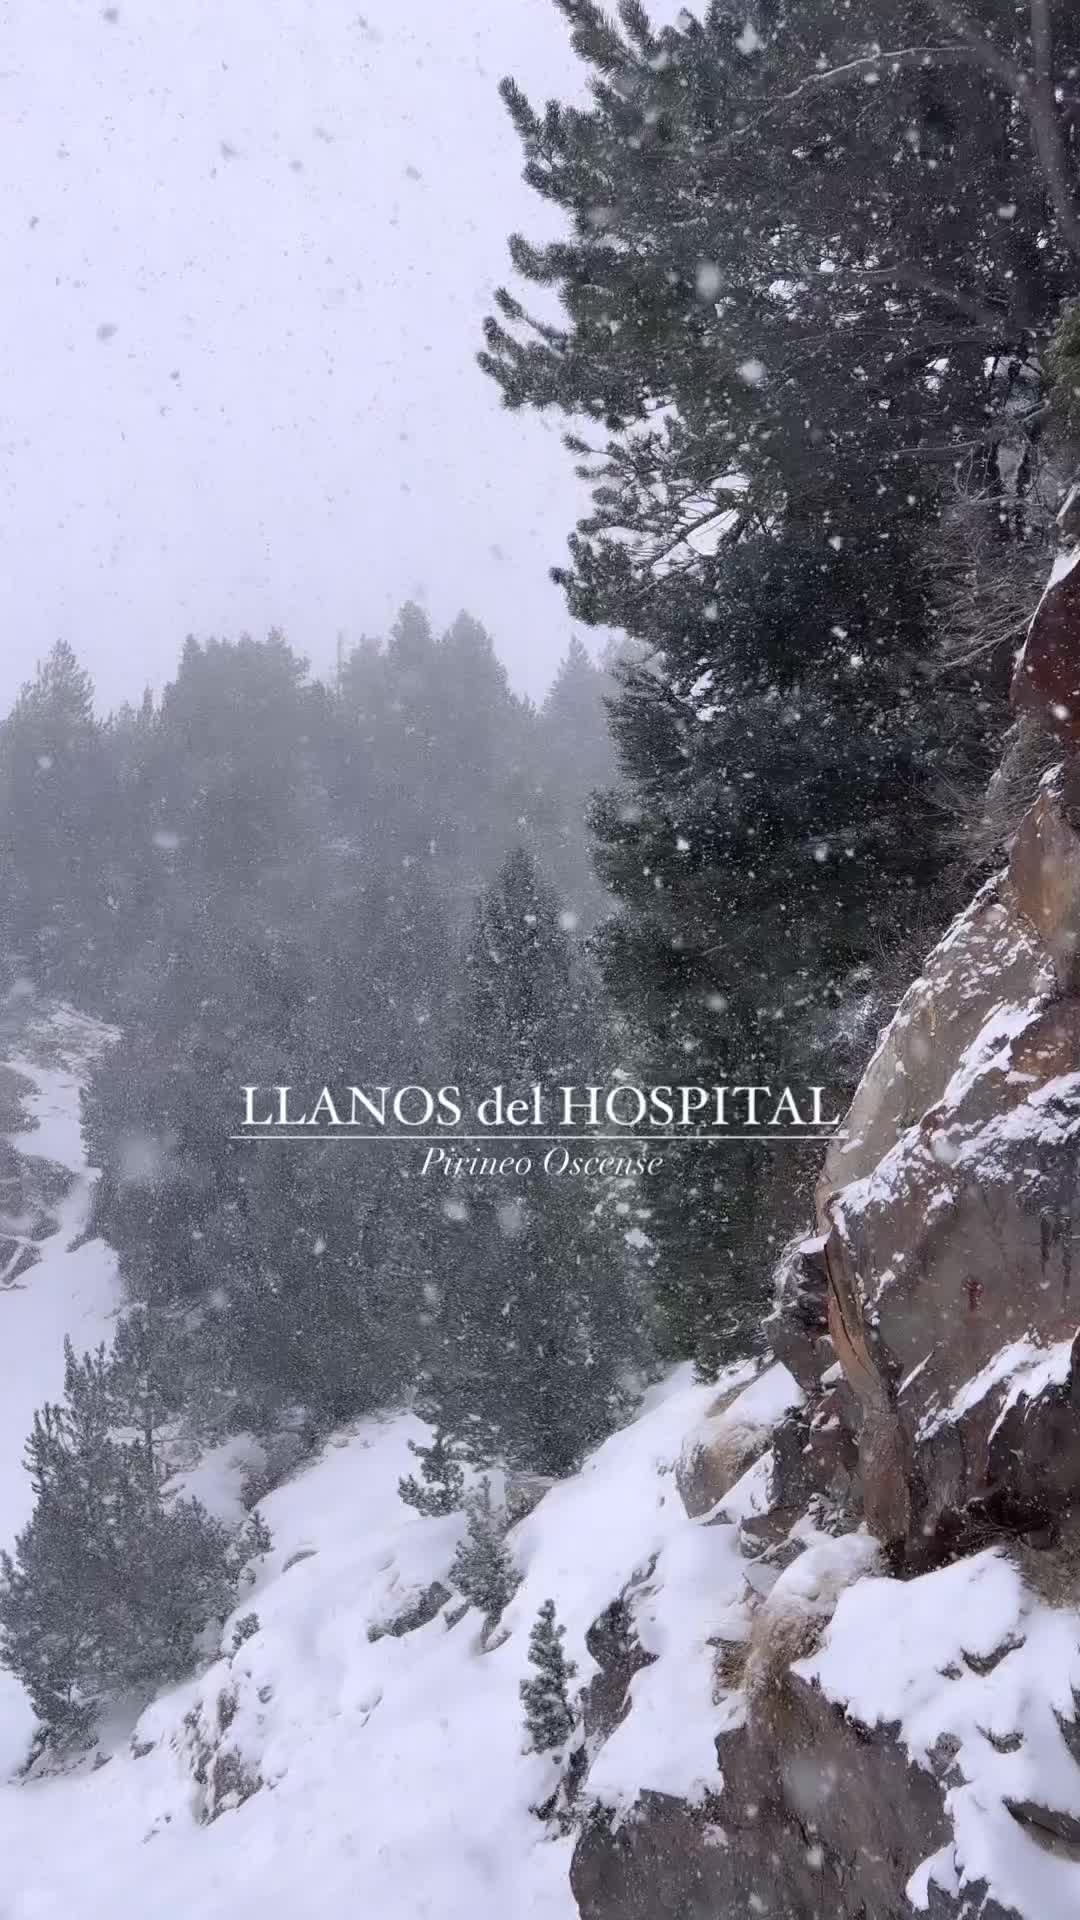 Spectacular Snowfall: Llanos del Hospital to Forau d’Aigualluts